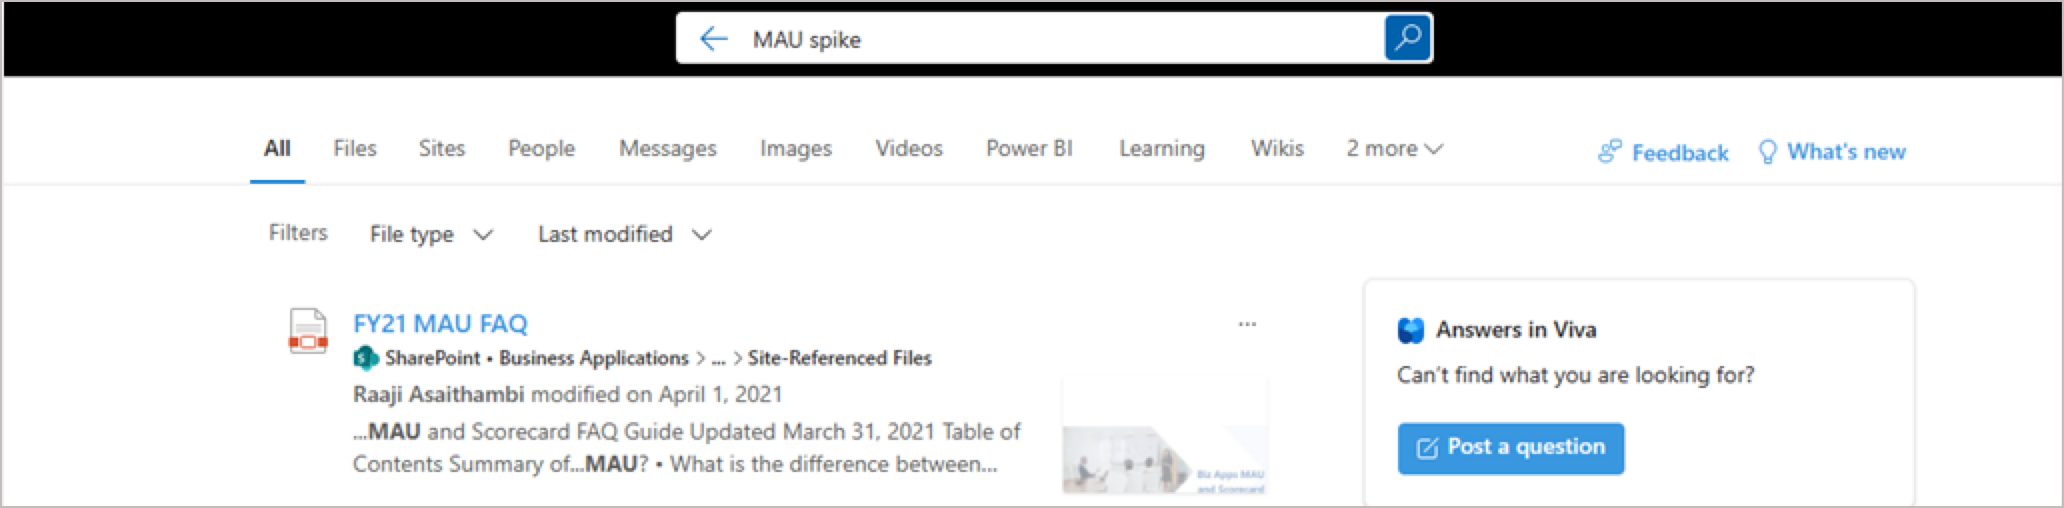 此屏幕截图显示如何搜索所有 Microsoft 图面的“答案”内容。